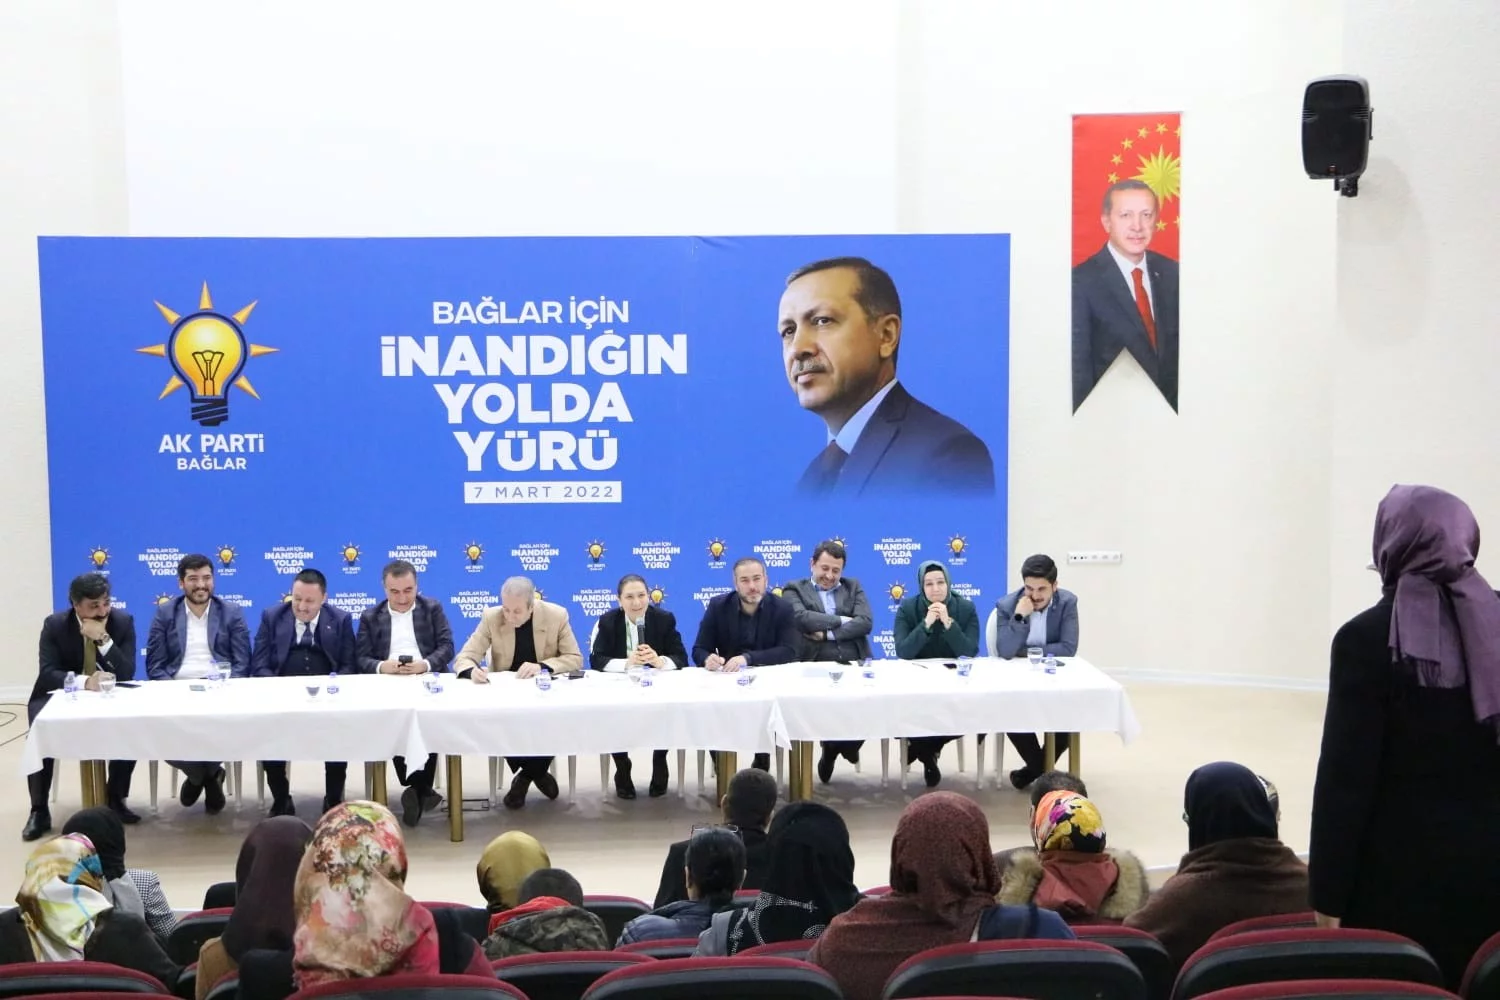 AK Parti Diyarbakır İl Başkanlığının ‘Vefa Buluşmaları Bağlar ile devam etti